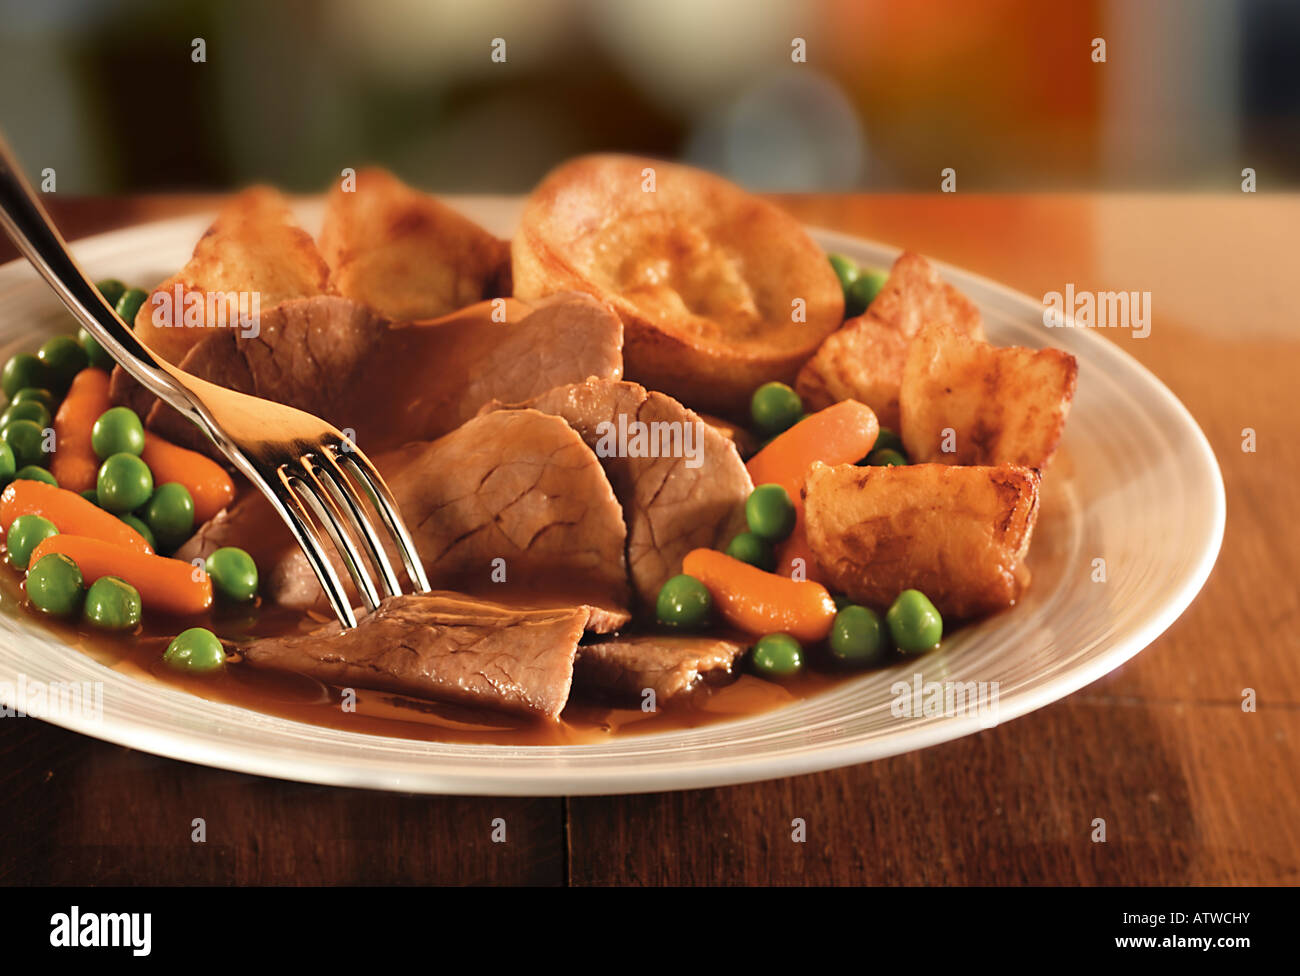 Traditionelle Braten Rindfleisch Abendessen mit Bratkartoffeln und Yorkshire pudding Stockfoto